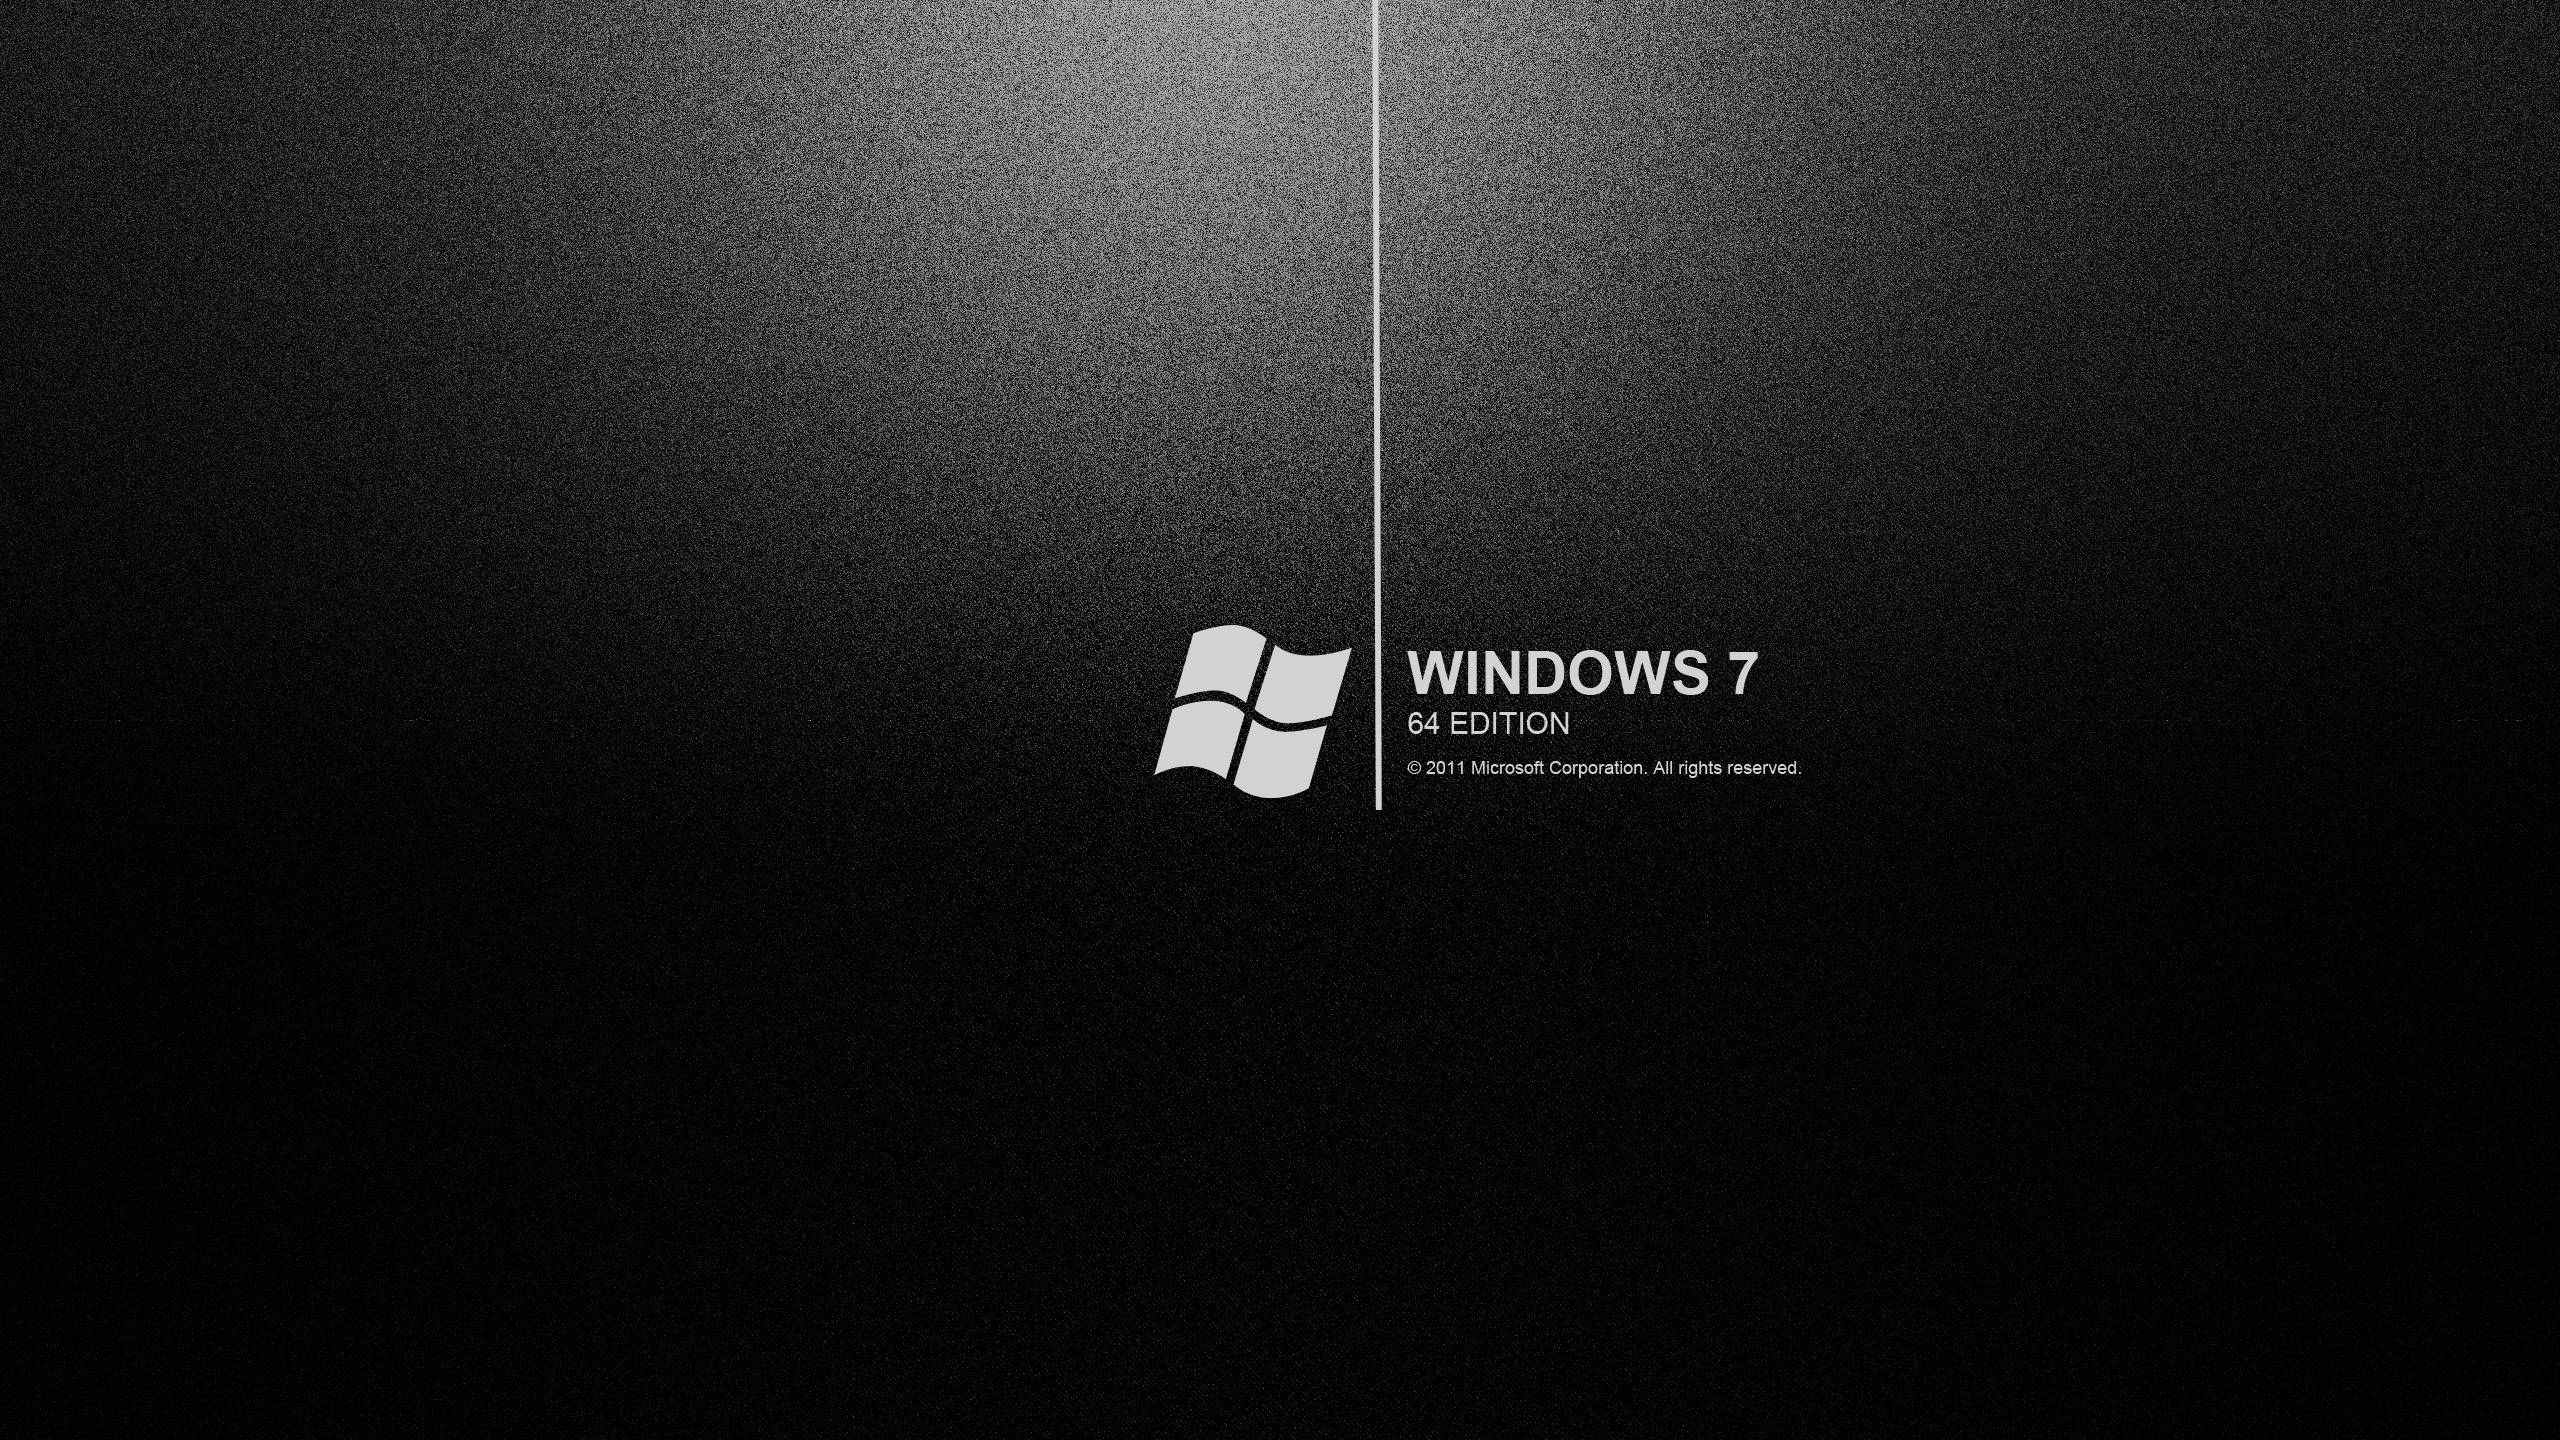 Hình nền đen Windows 7 - Top miễn phí Windows 7 nền đen: Bạn đang tìm kiếm một hình nền đen hoàn hảo cho Windows 7? Khám phá Top miễn phí Windows 7 nền đen ngay hôm nay và cùng trang trí cho máy tính của mình với những bức hình nền đen đẹp và sáng tạo nhất.